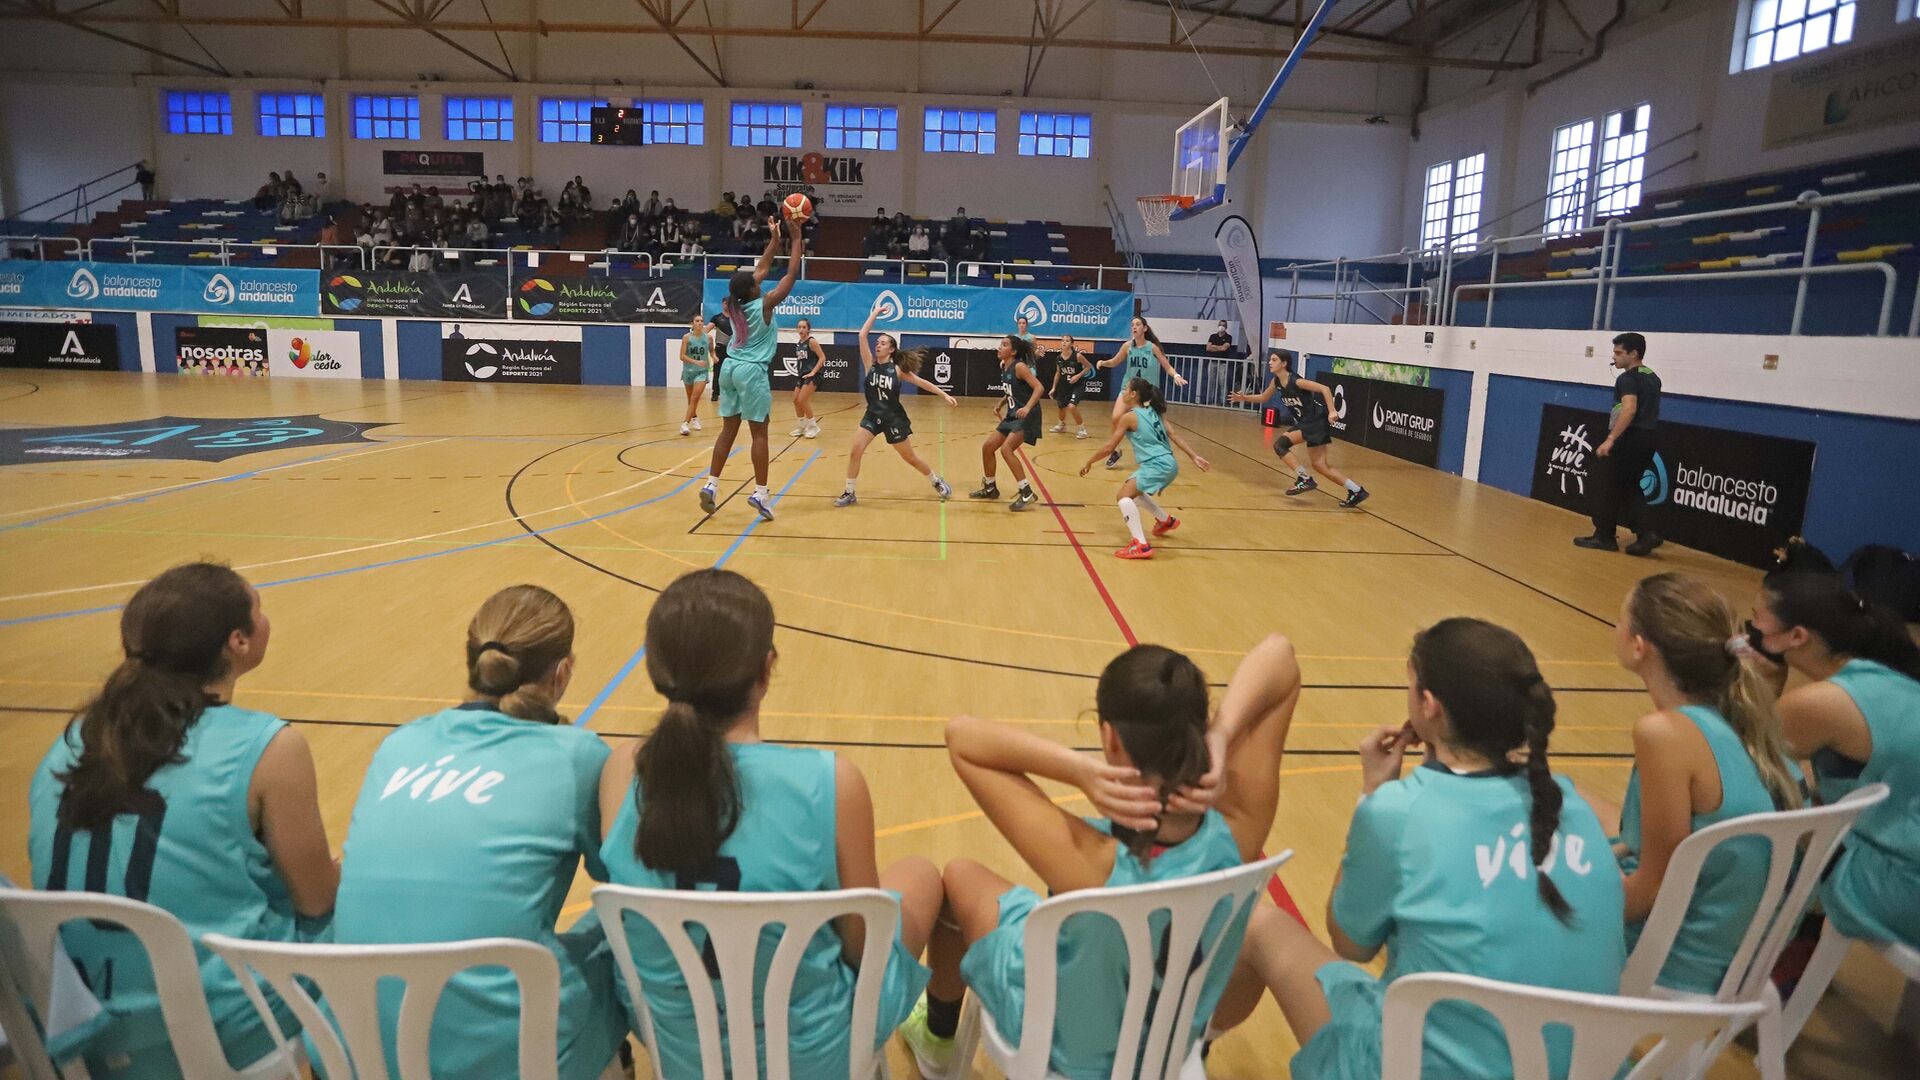 Fotos de la segunda jornada del Andaluza de baloncesto infantil en La L&iacute;nea